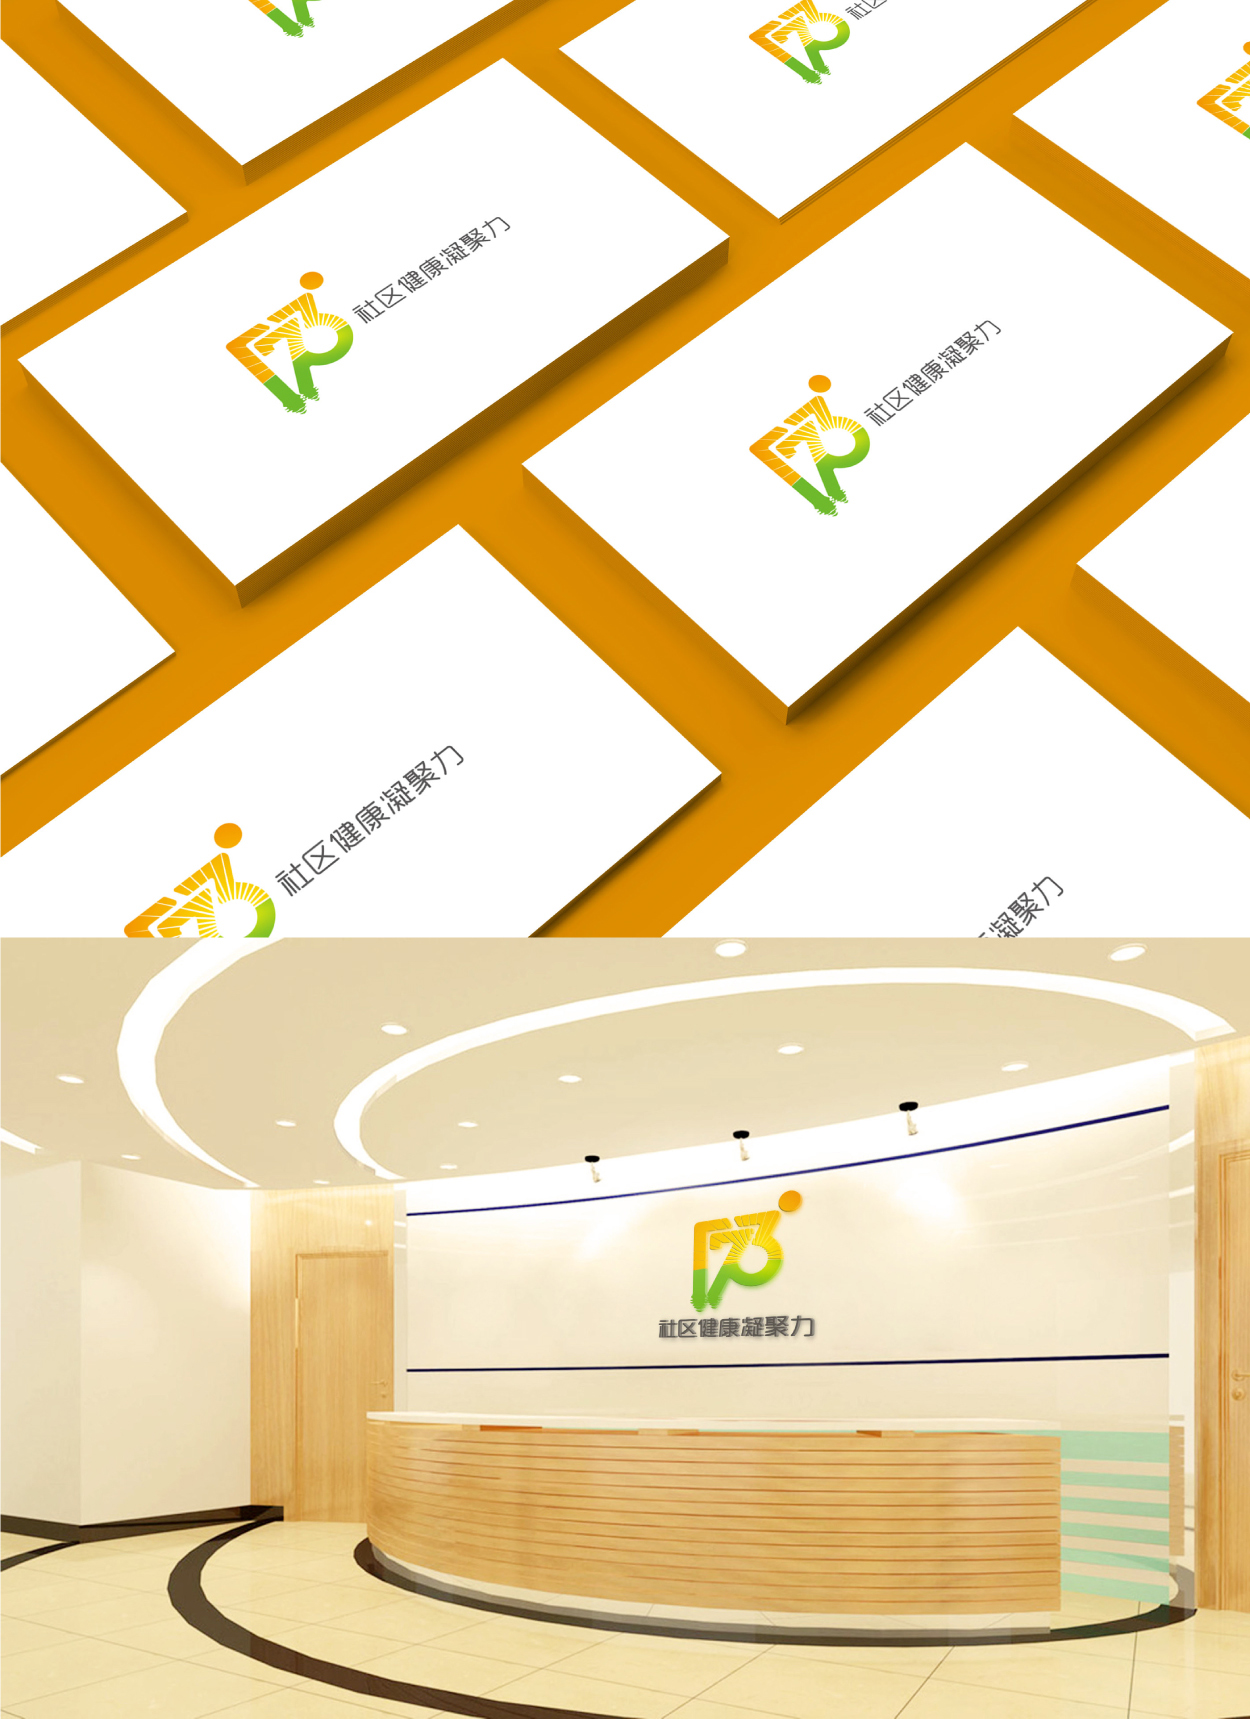 广州173健康产业标志设计作品案例14